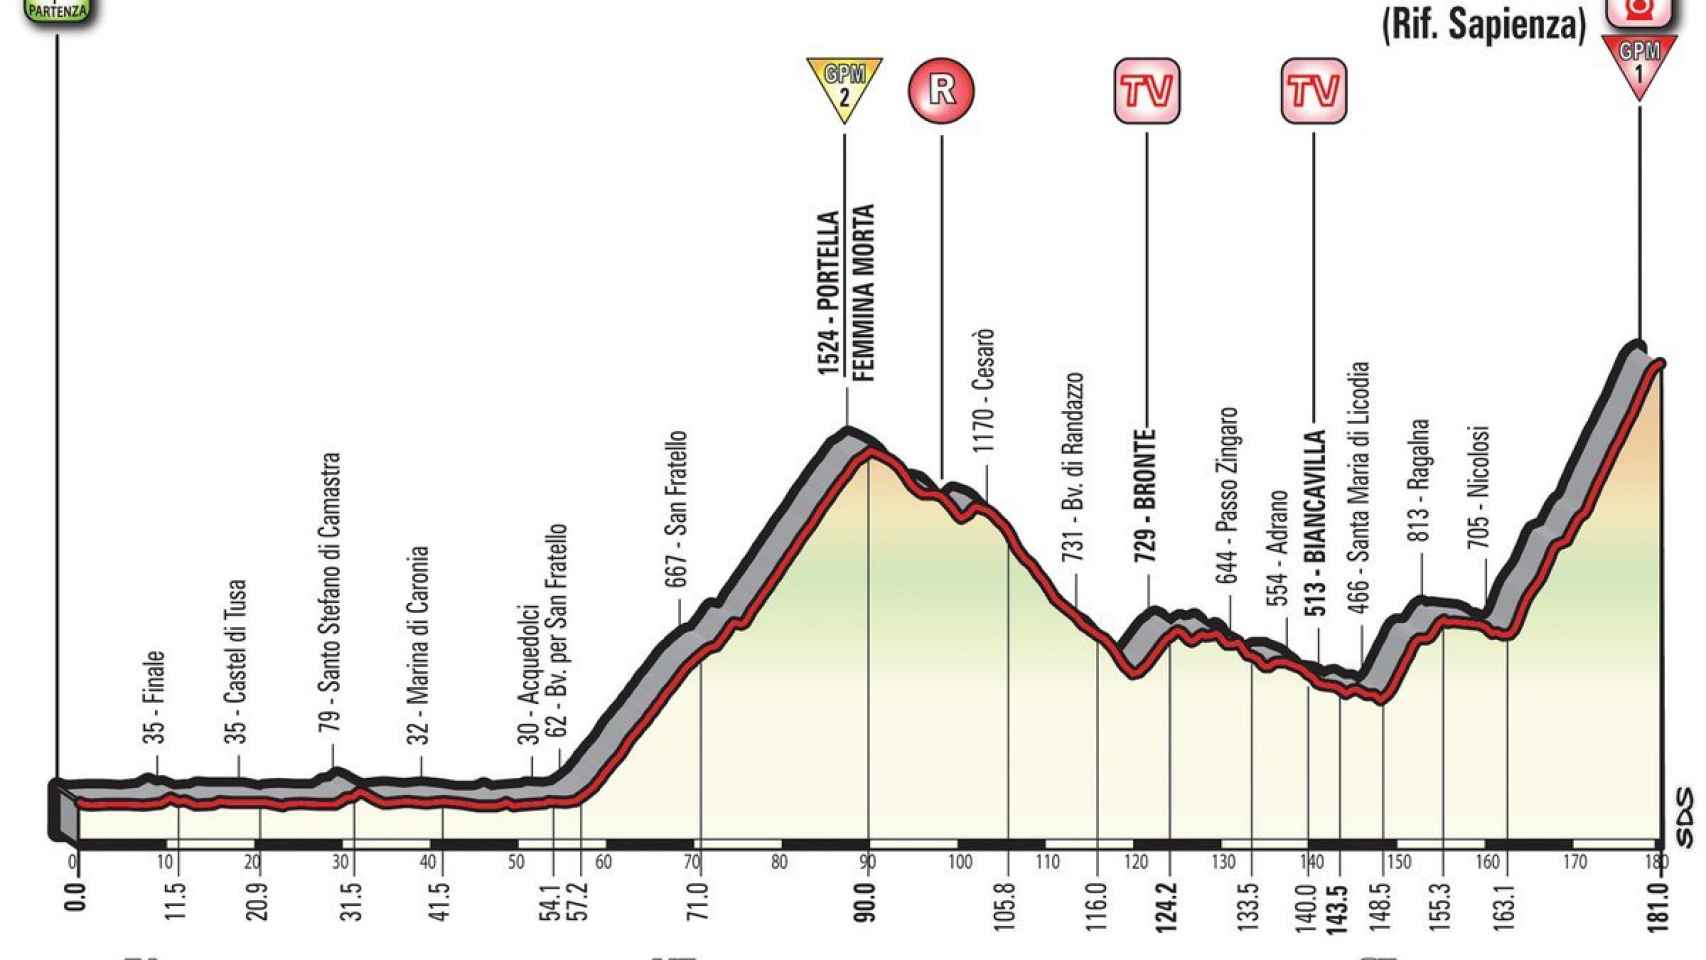 Cuarta etapa del Giro de Italia, en directo